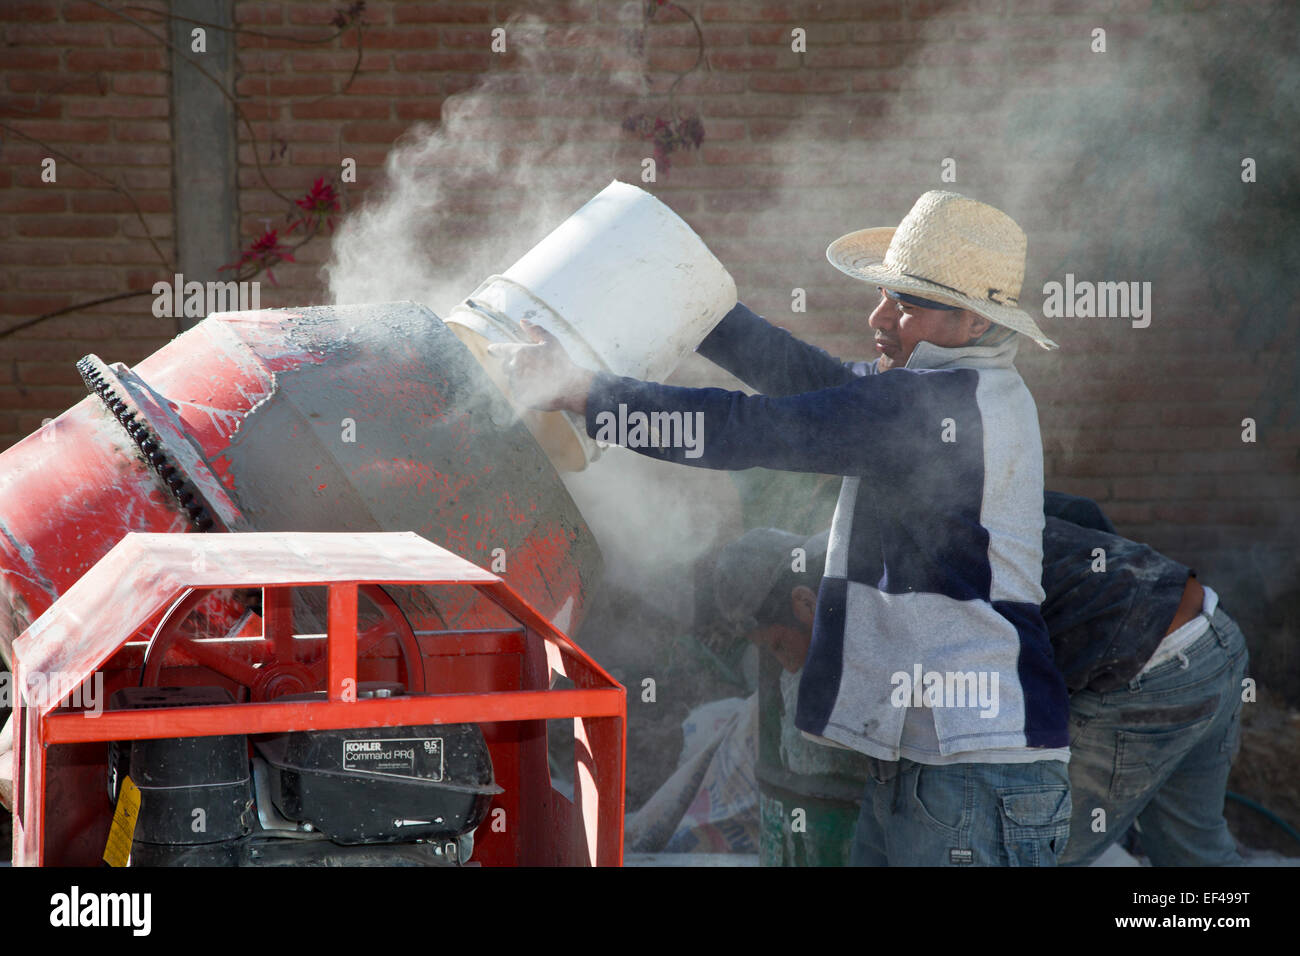 San Sebastian Abasolo, Oaxaca, Mexique - Les travailleurs du ciment afin de préparer un mélange de terre autrefois rue d'une petite ville rurale du Mexique. Banque D'Images